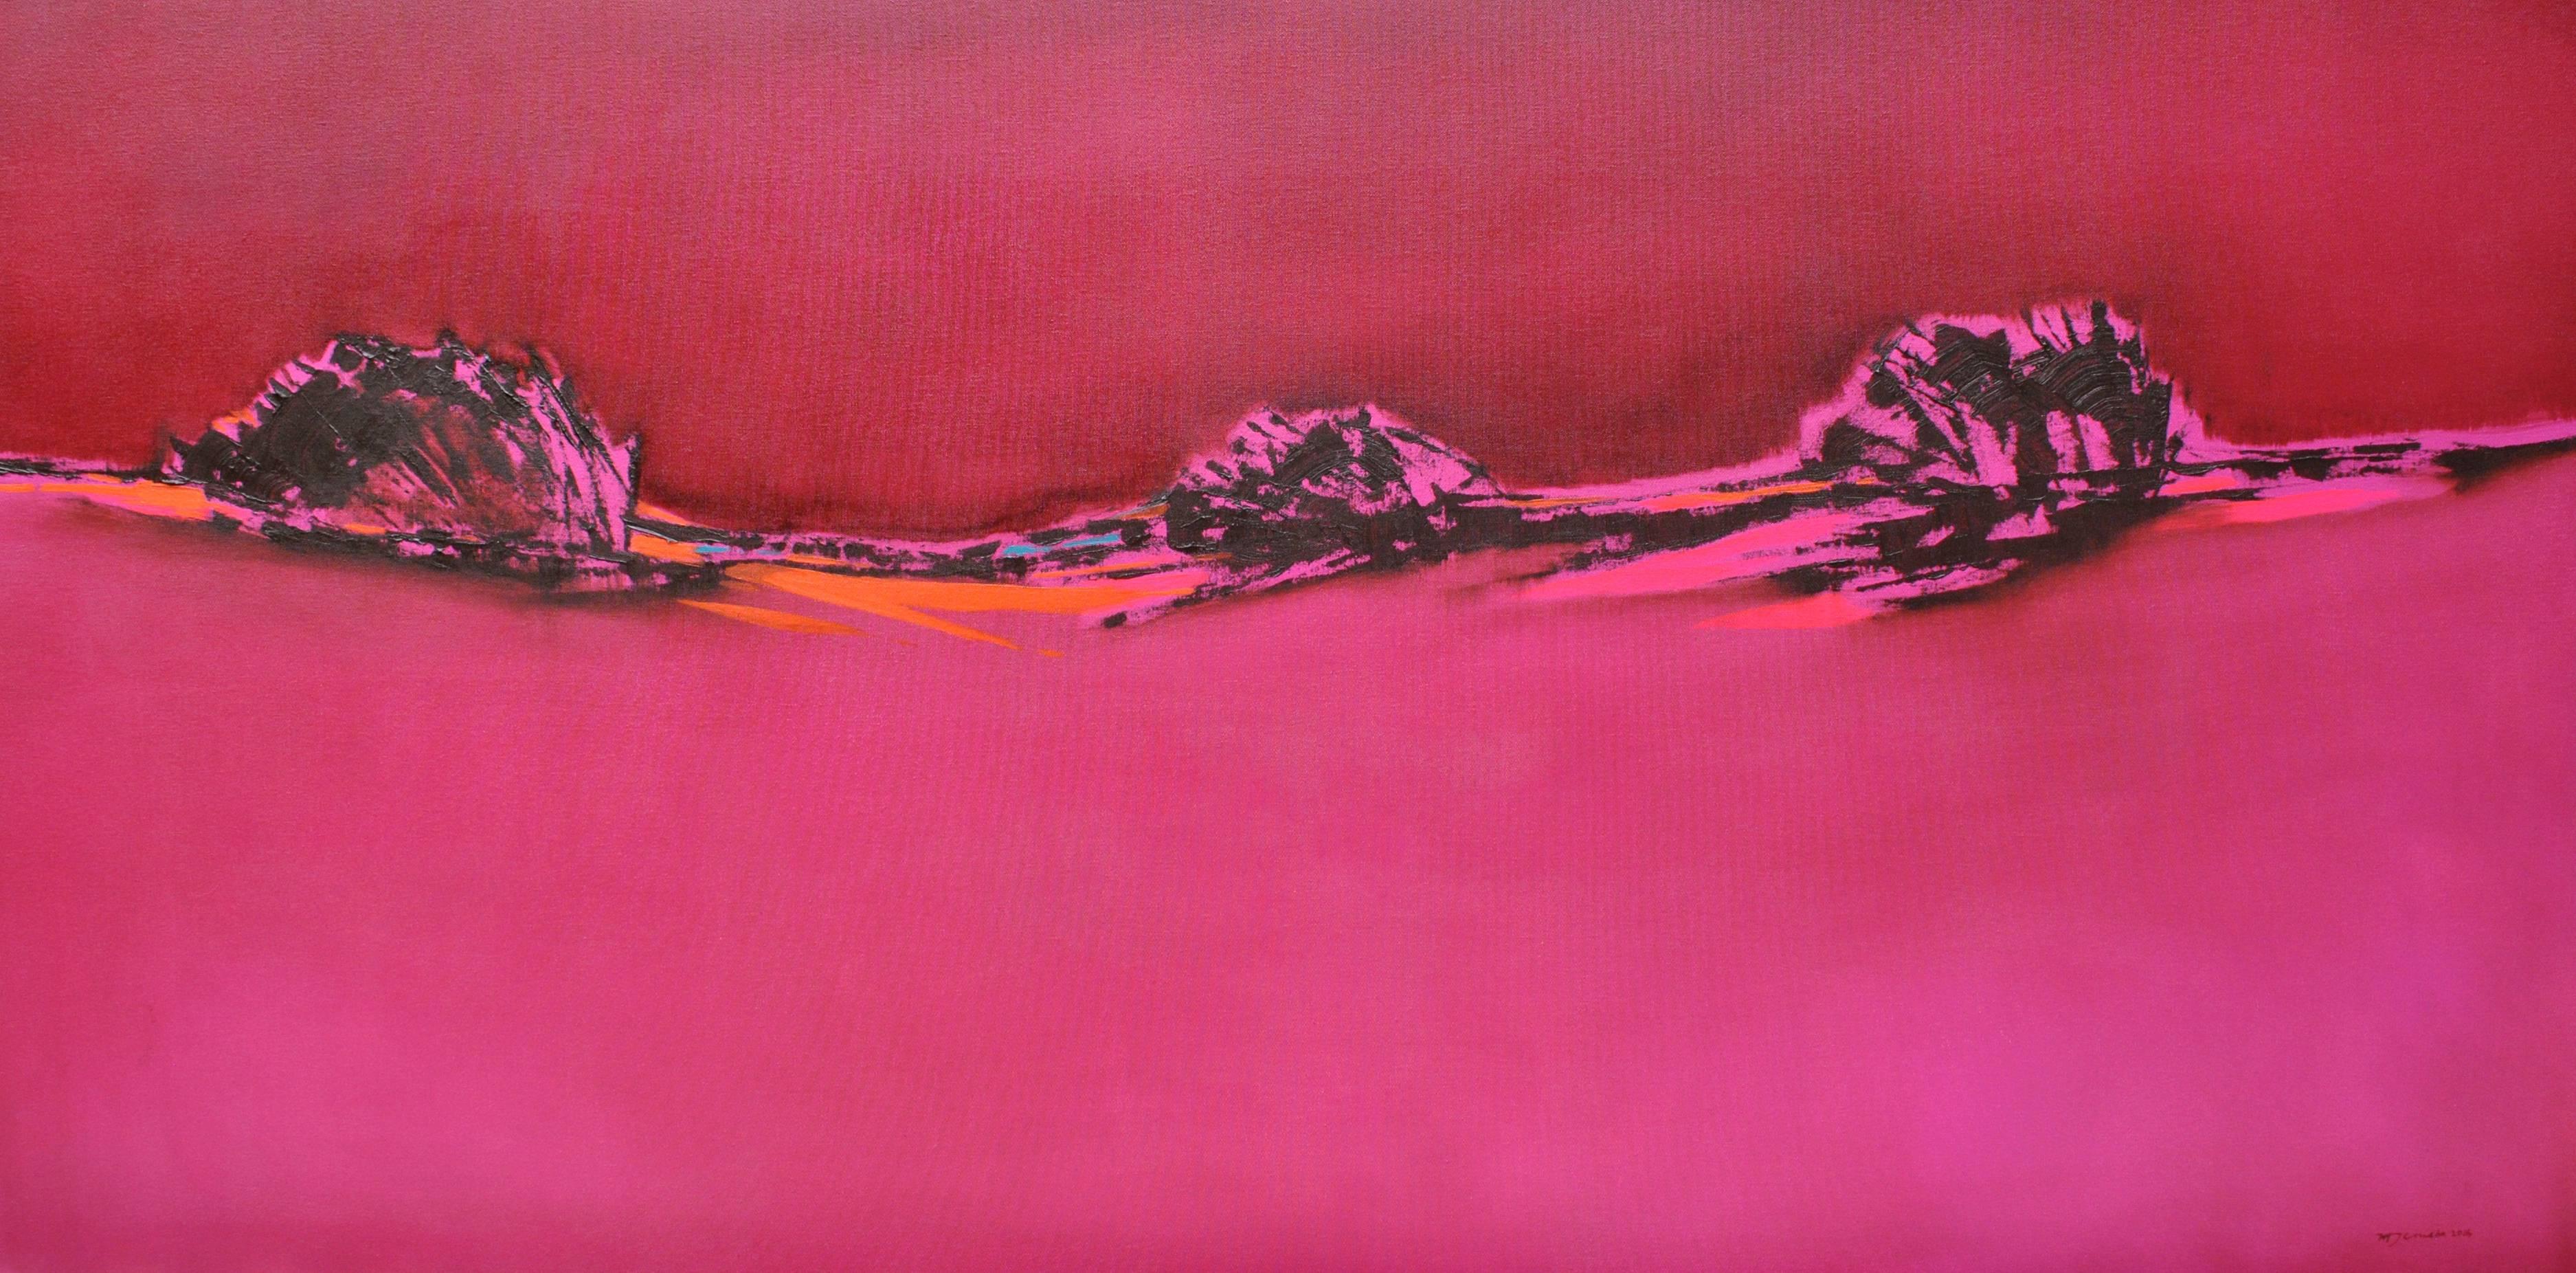 Rosa Blazing - Hommage an Patagonien, abstrakte Landschaft in leuchtenden, kräftigen Farben – Painting von Maria Jose Concha